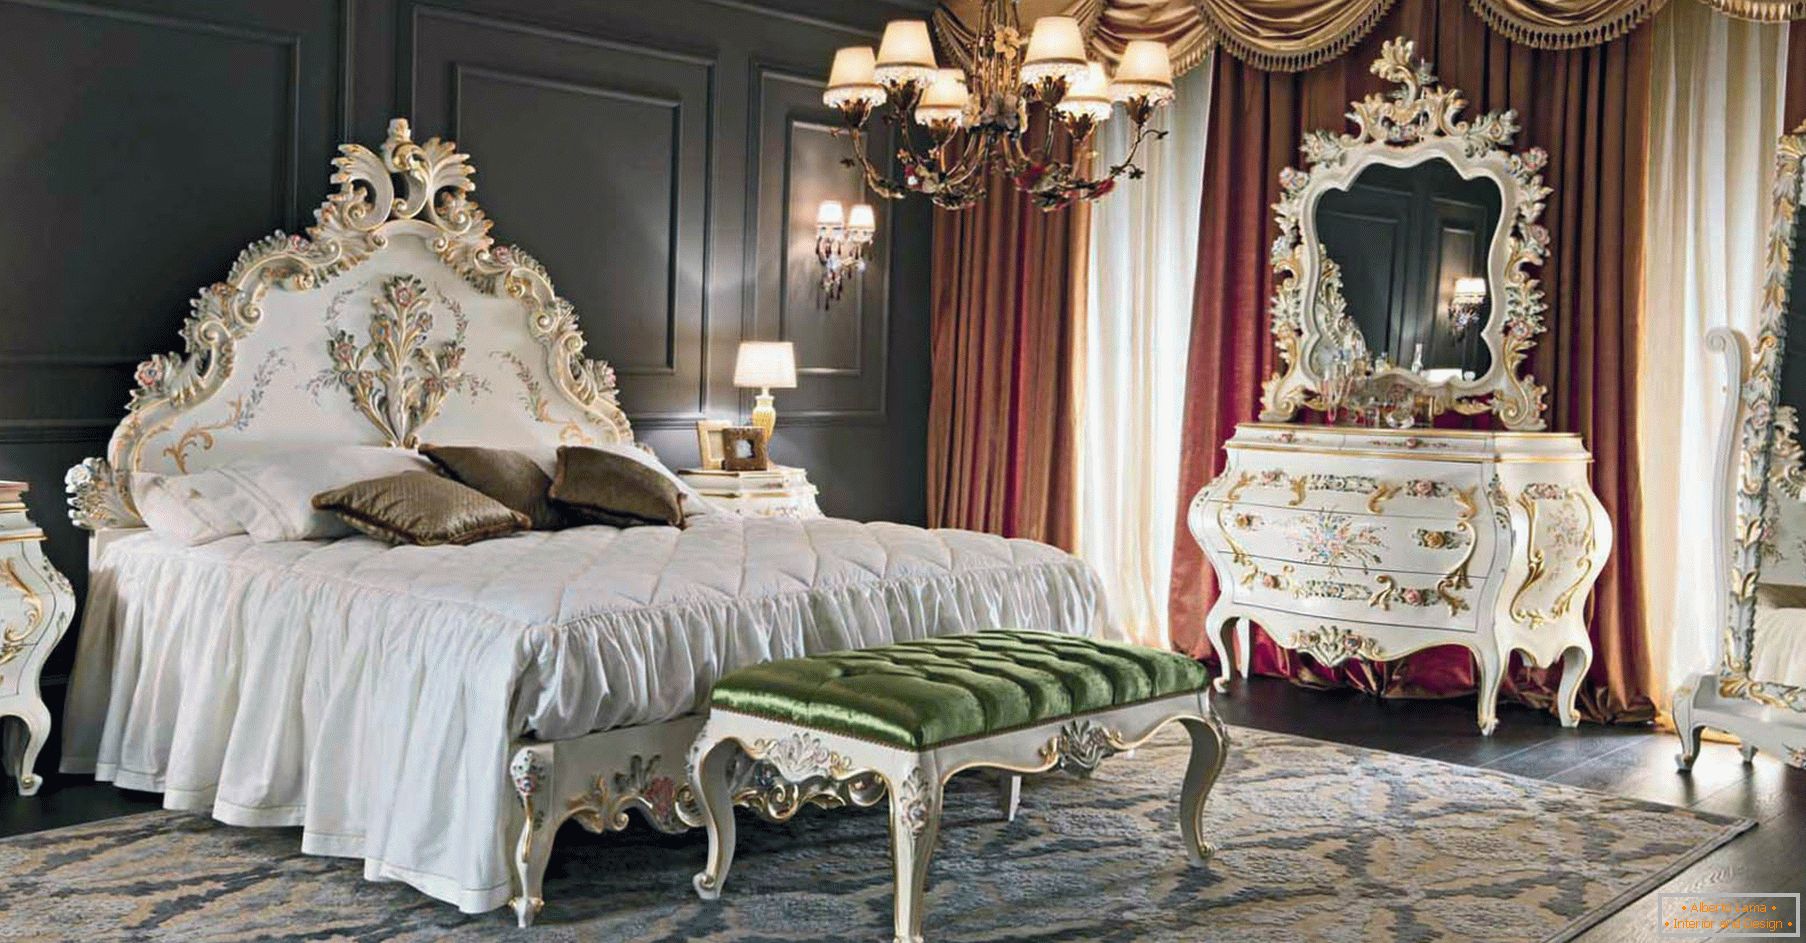 Per decorare la camera da letto, è stato usato un contrasto di colori marrone scuro, oro, rosso e bianco. I mobili sono selezionati secondo lo stile del barocco.